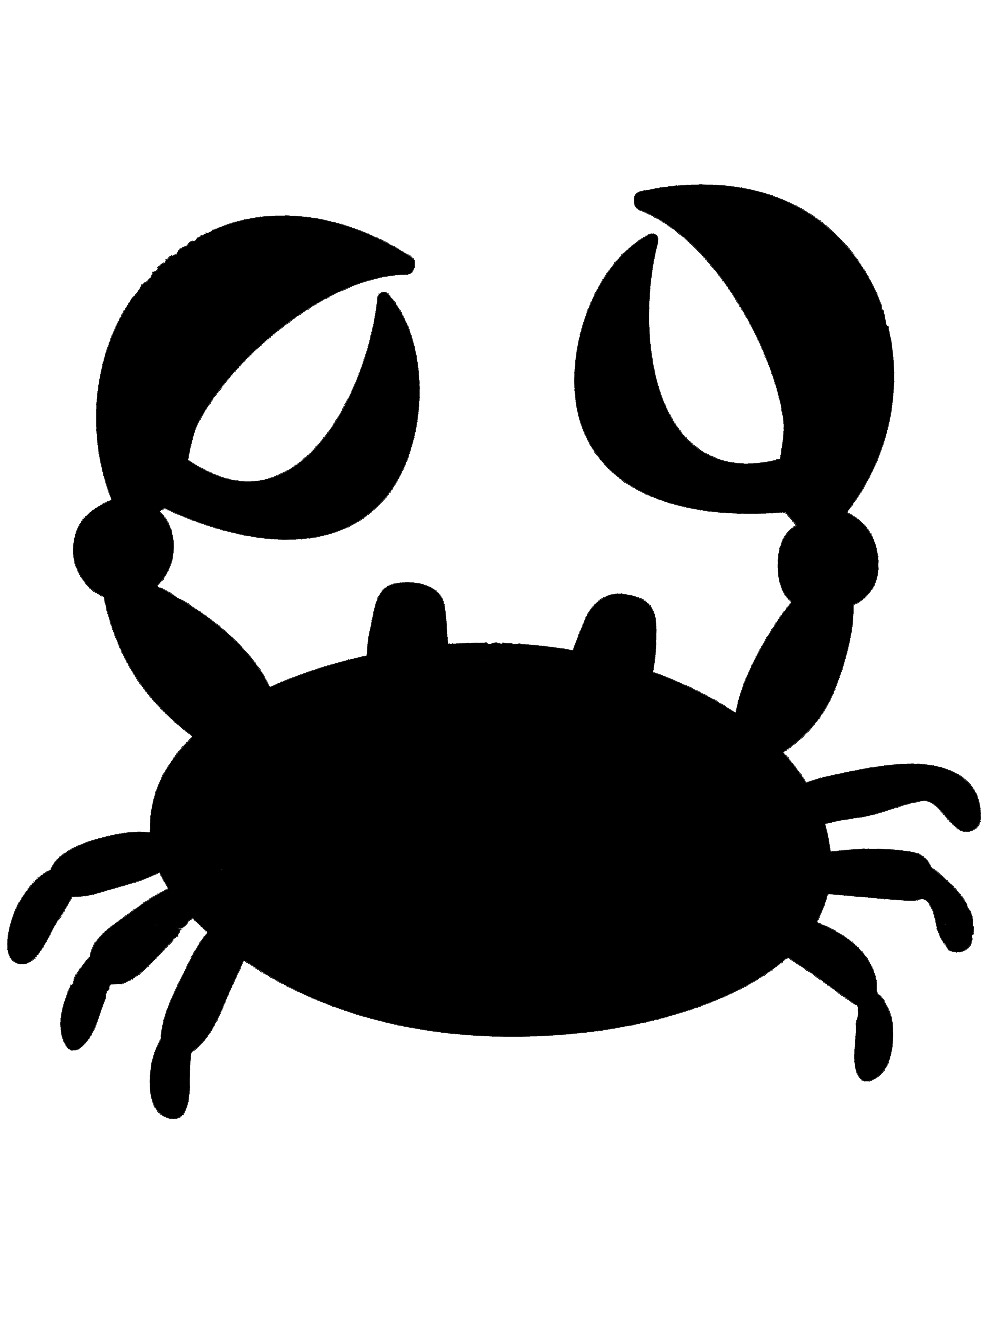 Free Printable Crab Stencils